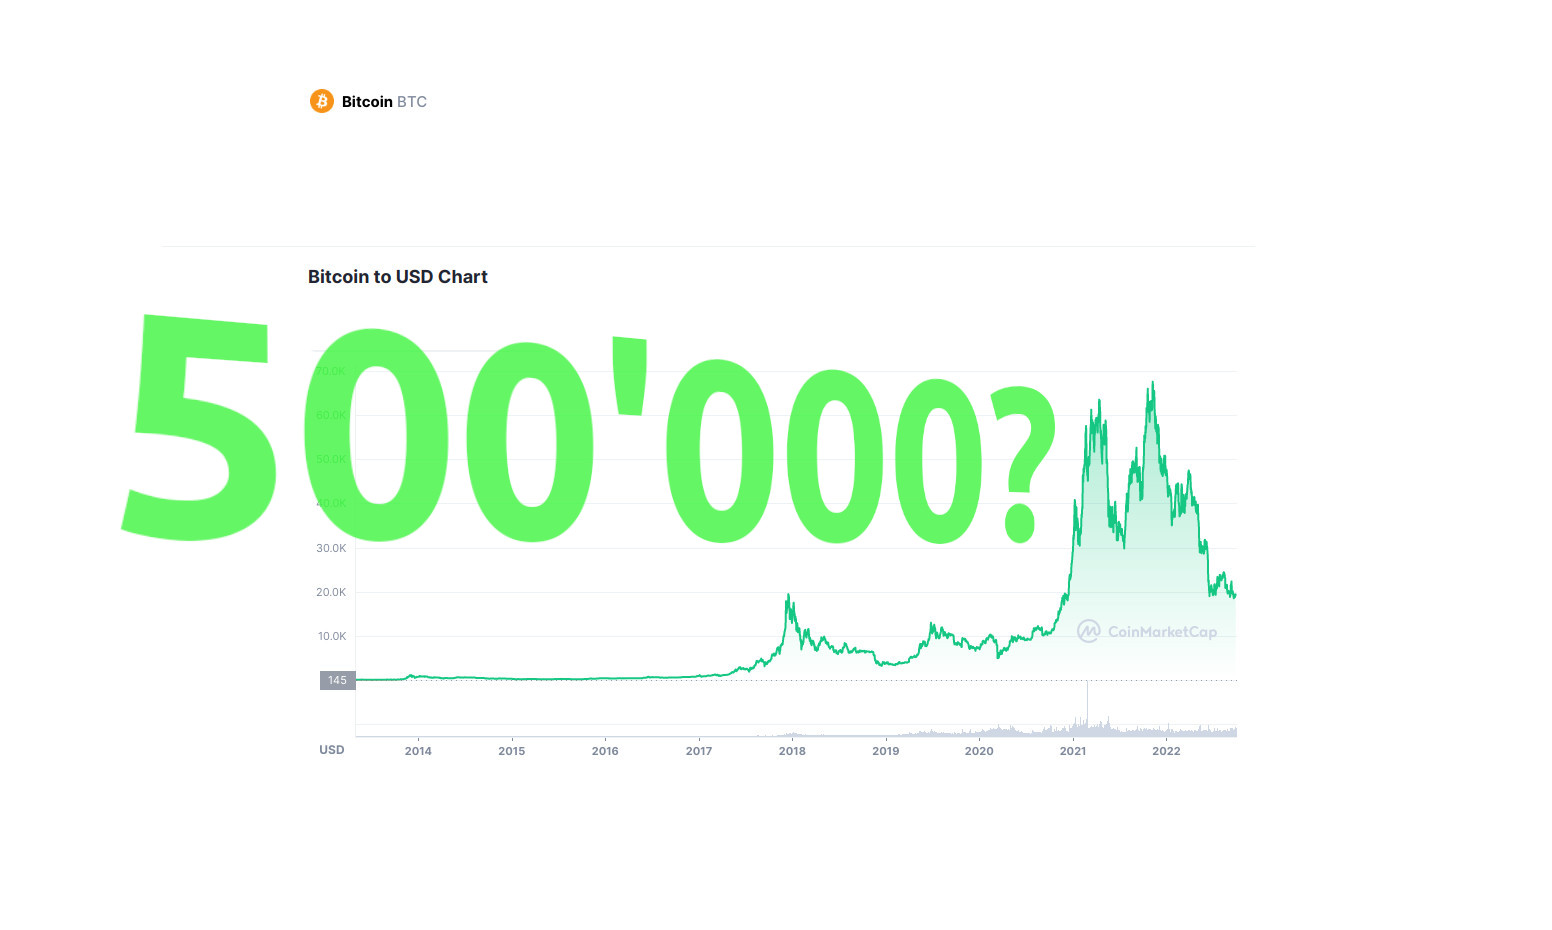 Bitcoin bald bei 500’000? Diese Experten prognostizieren es!